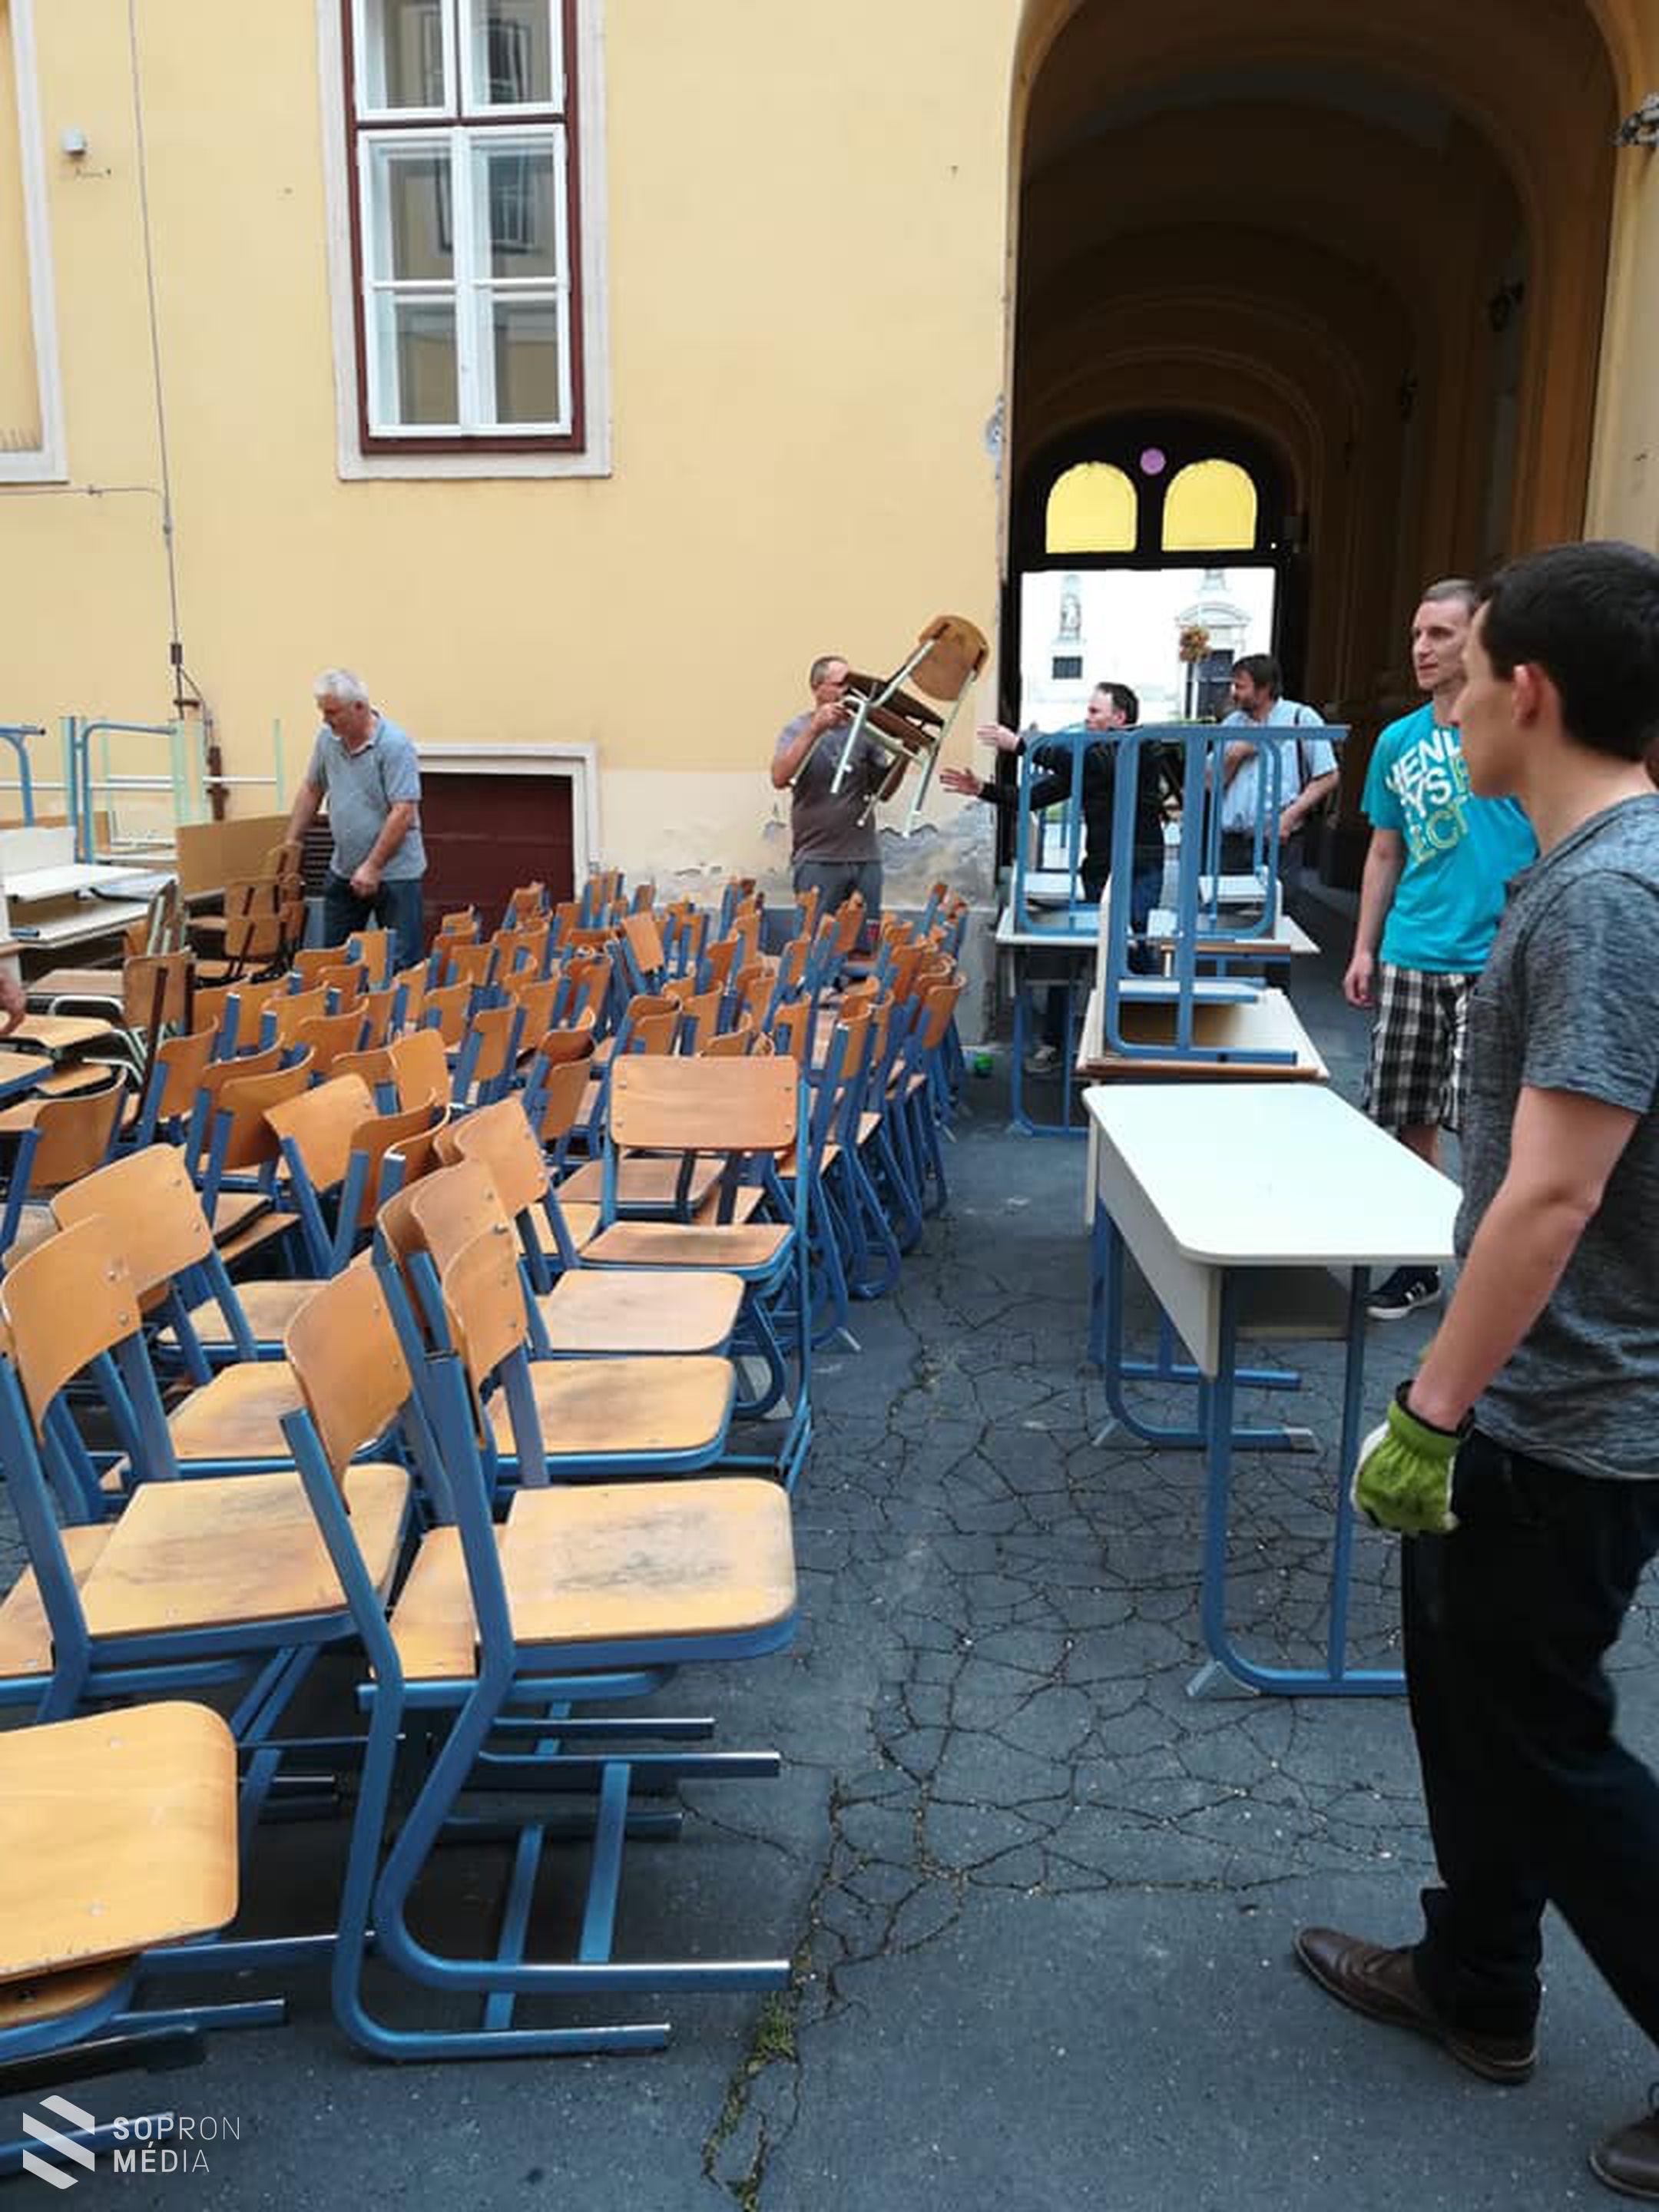 Egy kamionnyi adománnyal segít a soproni Szent Orsolya Iskola!